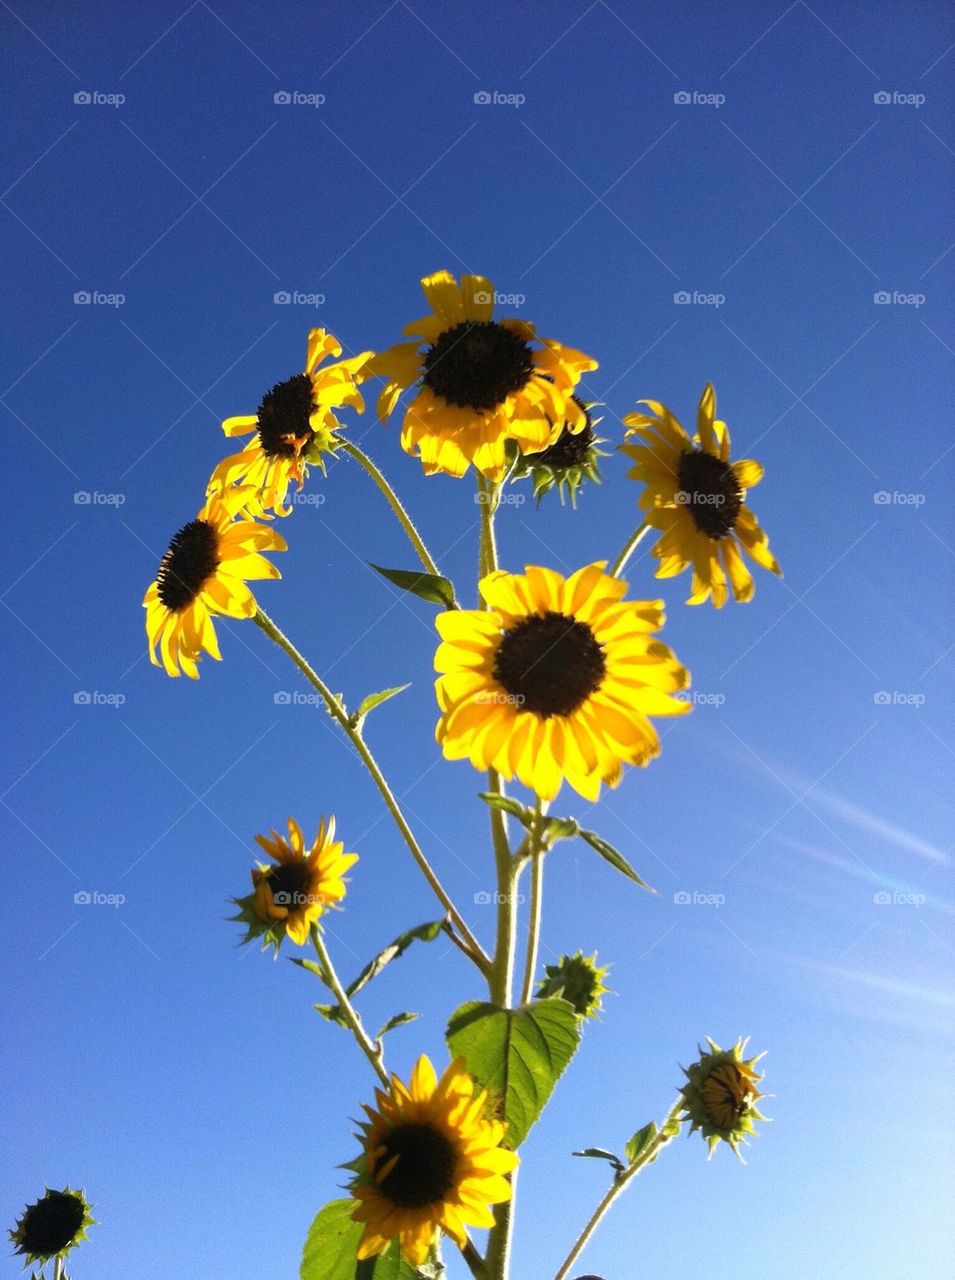 Sunflowers in the Desert